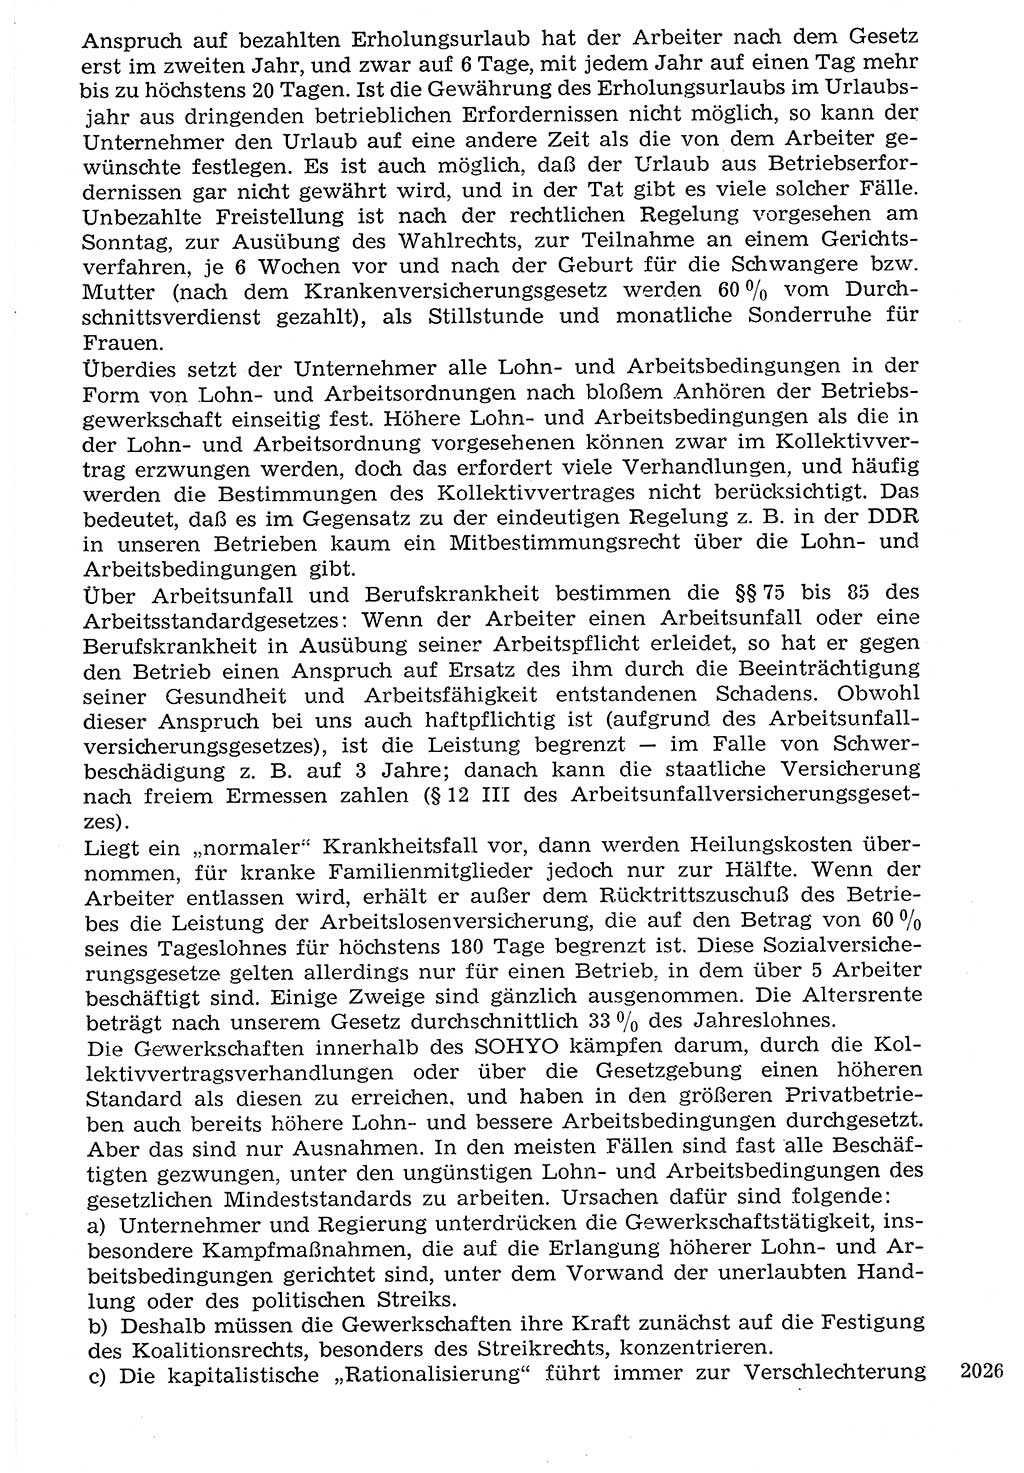 Staat und Recht (StuR), 17. Jahrgang [Deutsche Demokratische Republik (DDR)] 1968, Seite 2026 (StuR DDR 1968, S. 2026)